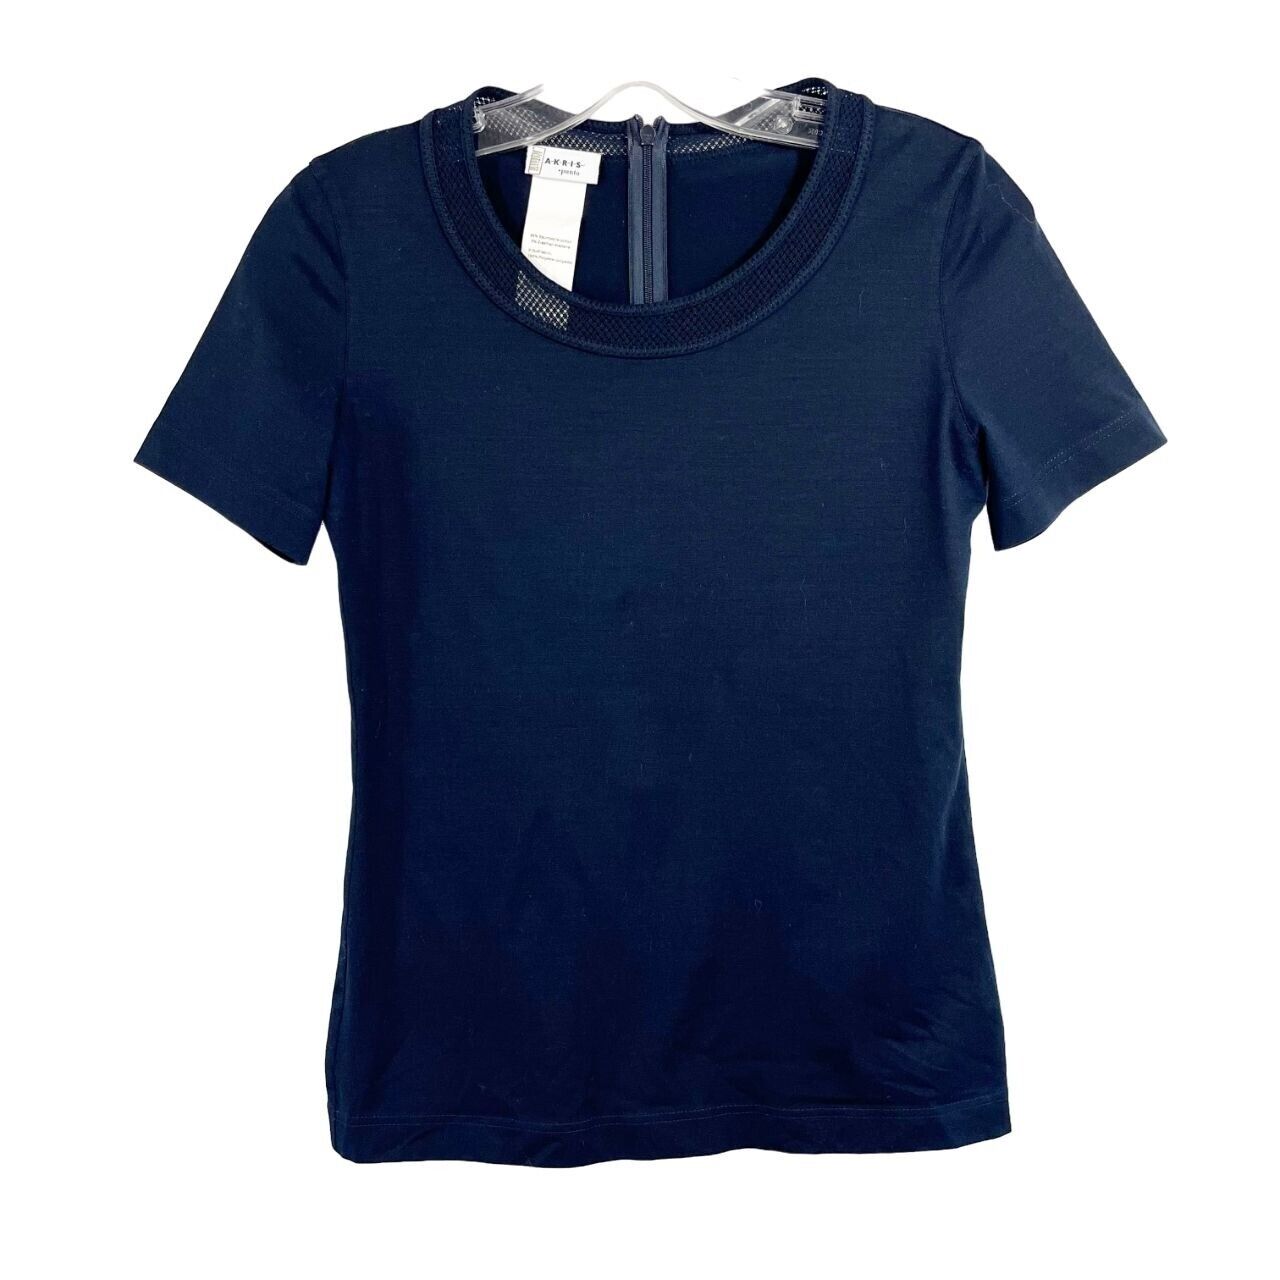 Akris Punto Navy Blue Lacet Trim Short Sleeve Shirt Business Casual - Size US 6